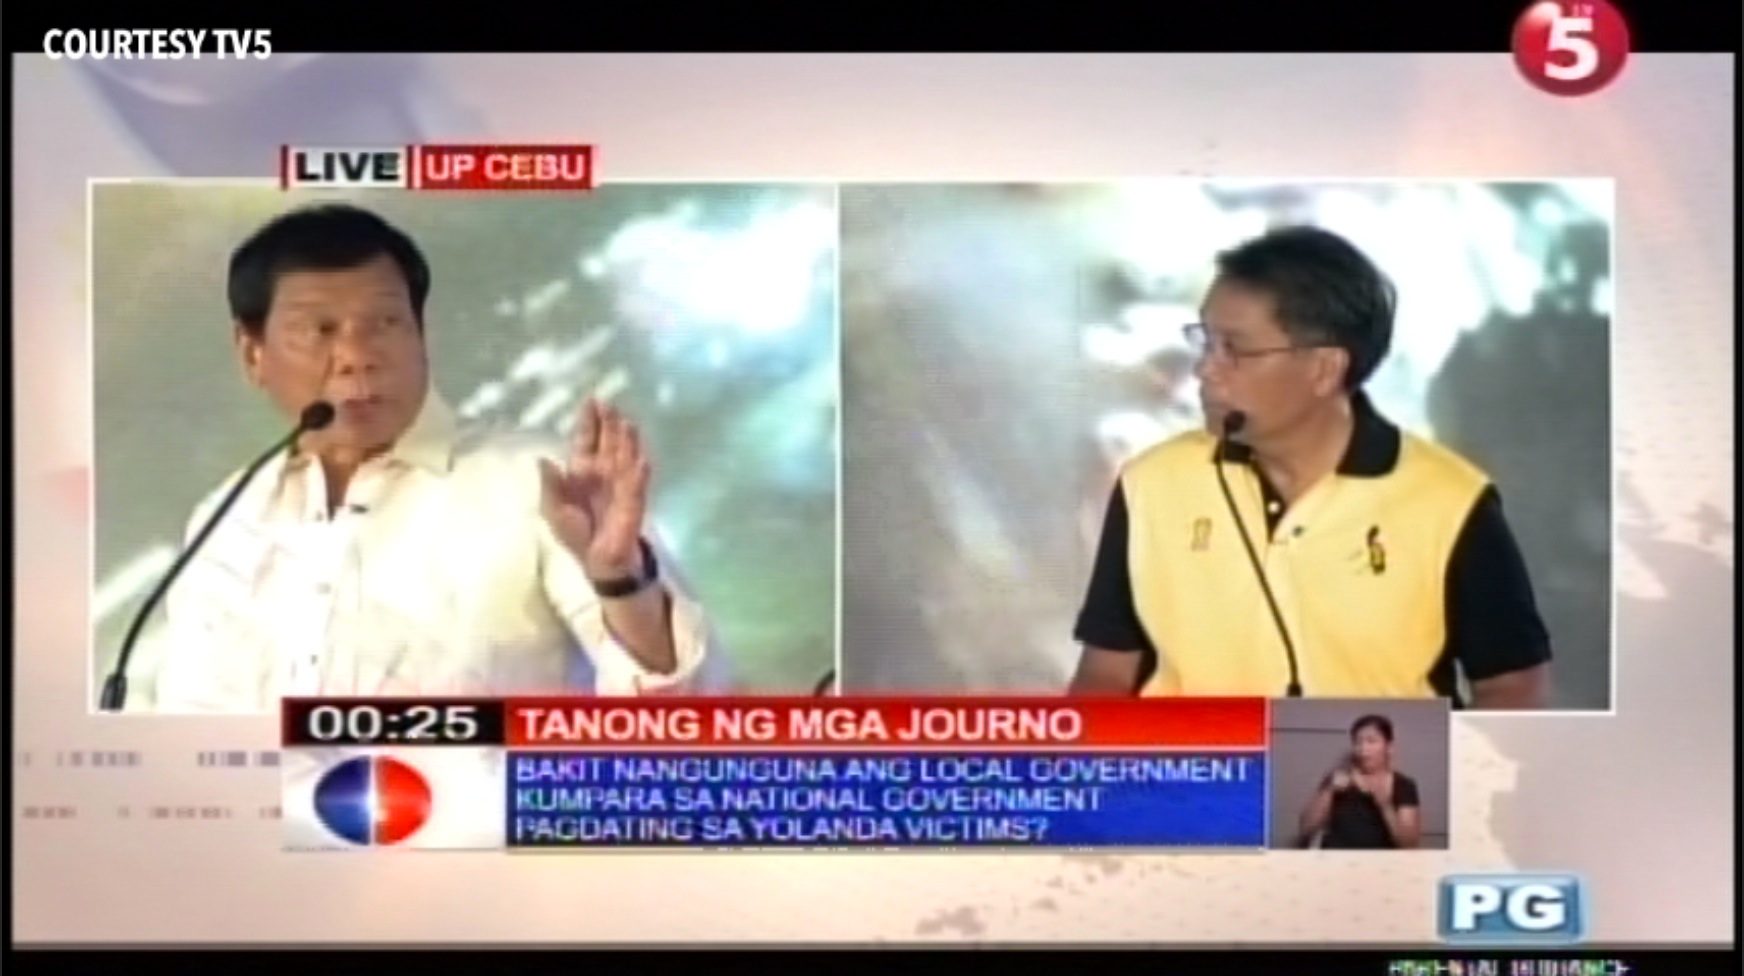 Duterte still netizens’ winner in Round 3 of Cebu presidential debate